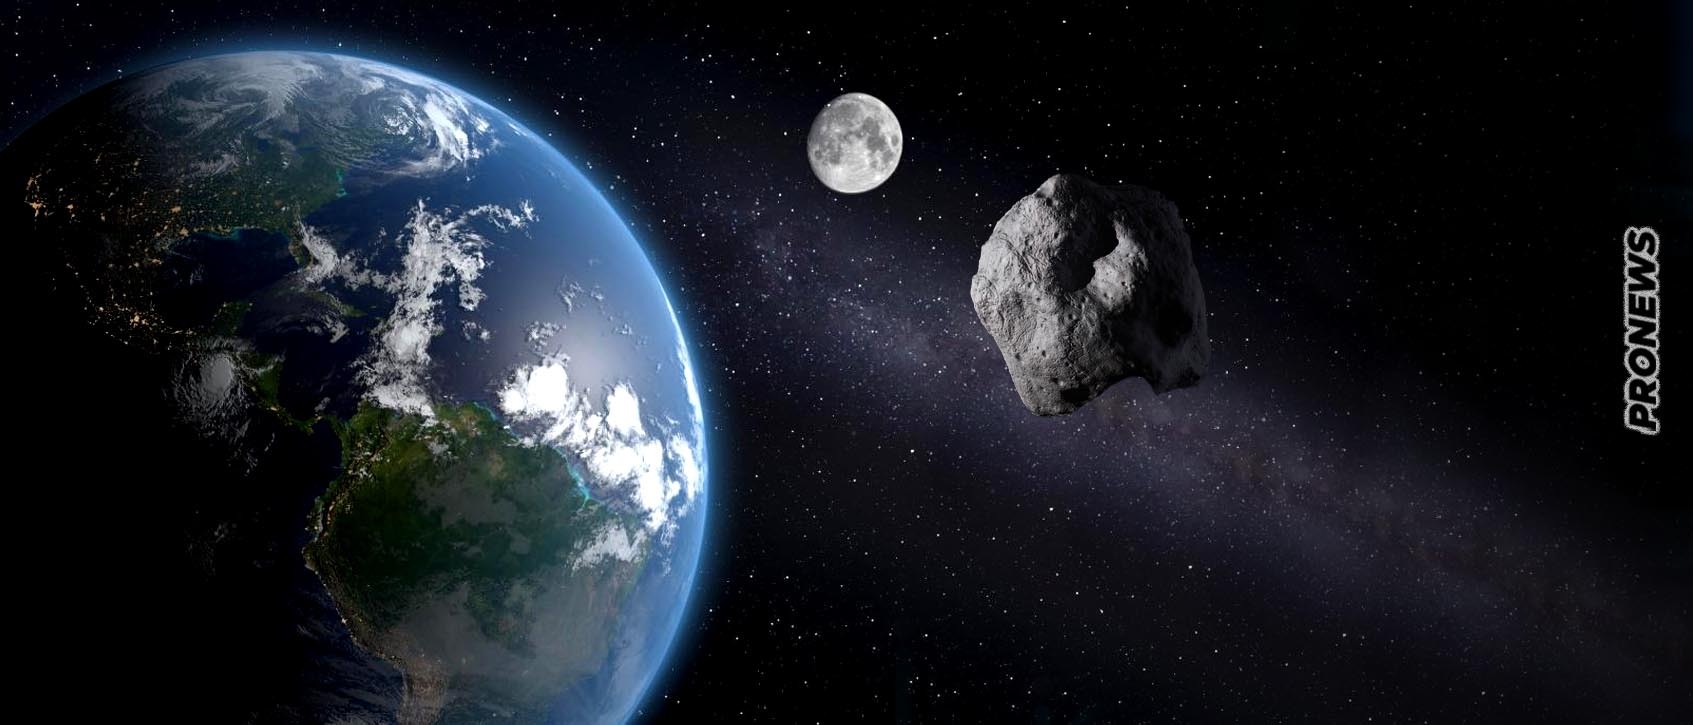 Αστεροειδής «City killer» θα περάσει «ξυστά» από Γη και Σελήνη το Σάββατο – Συμβαίνει μια φορά τη 10ετία